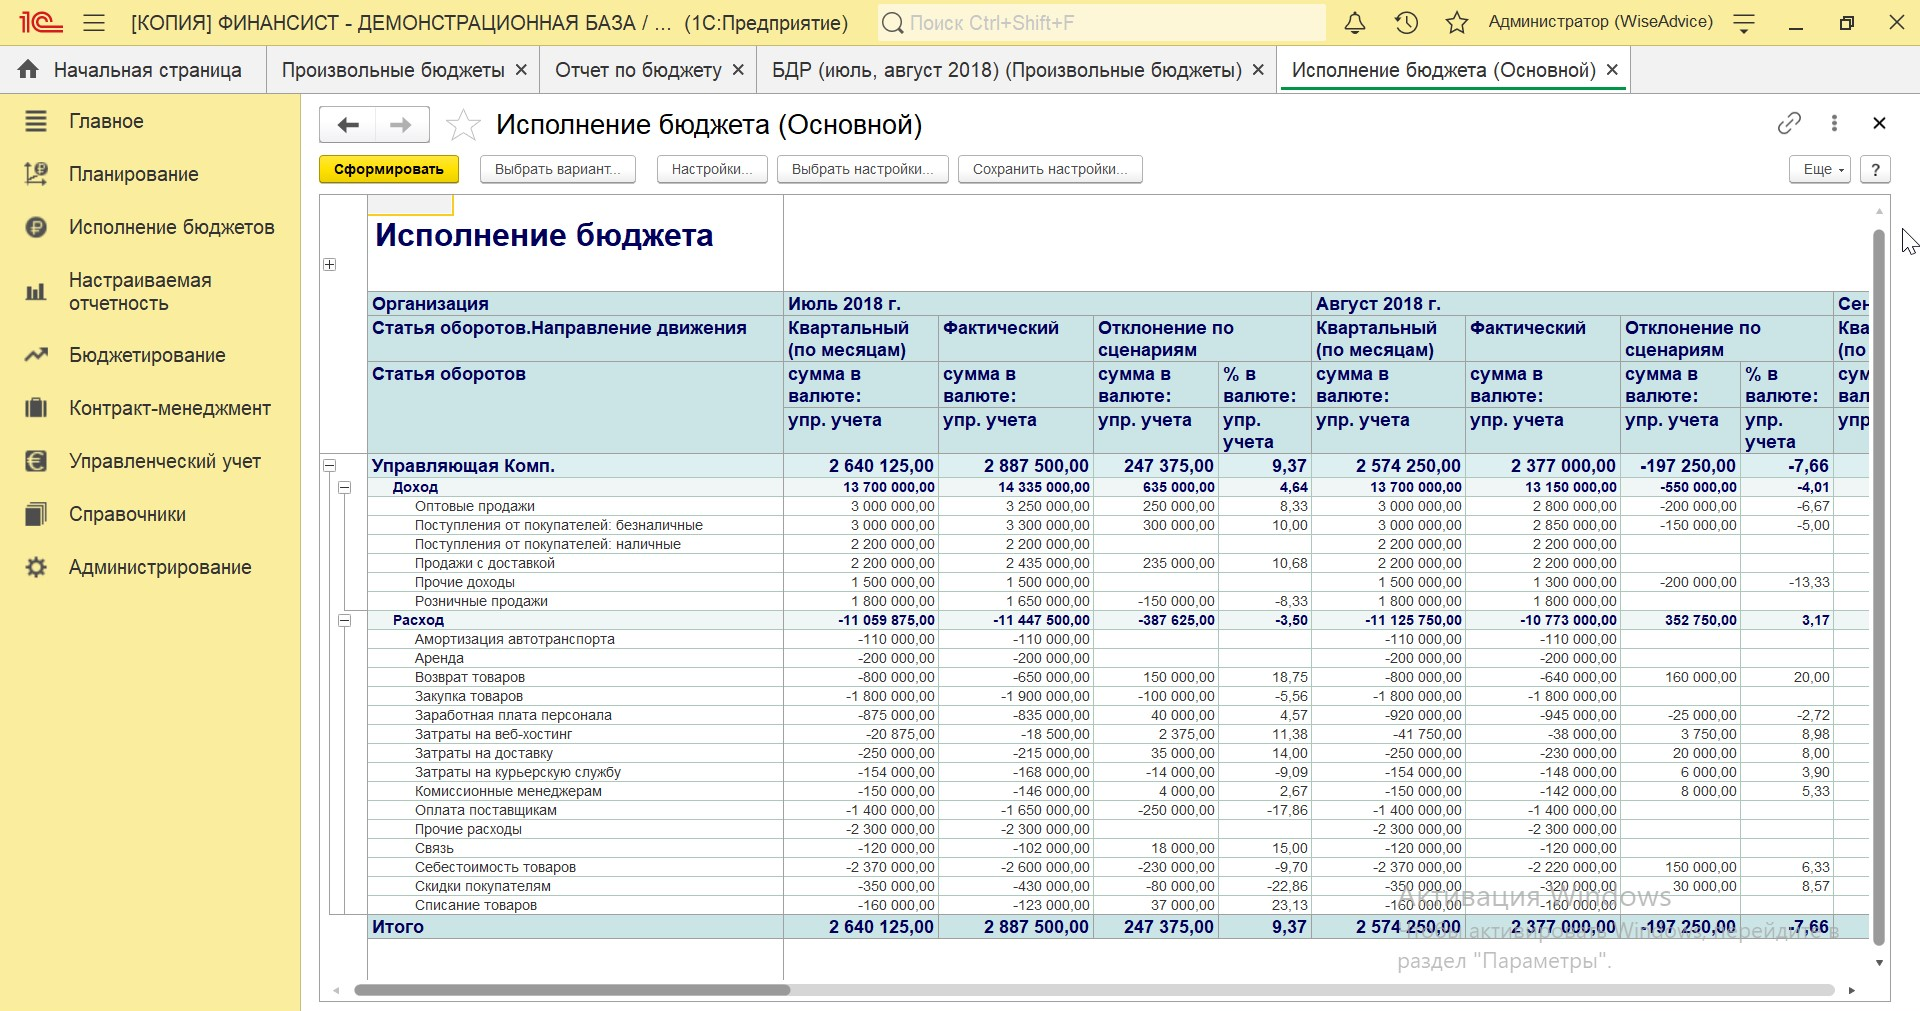 Рис.13 Бюджет доходов и расходов